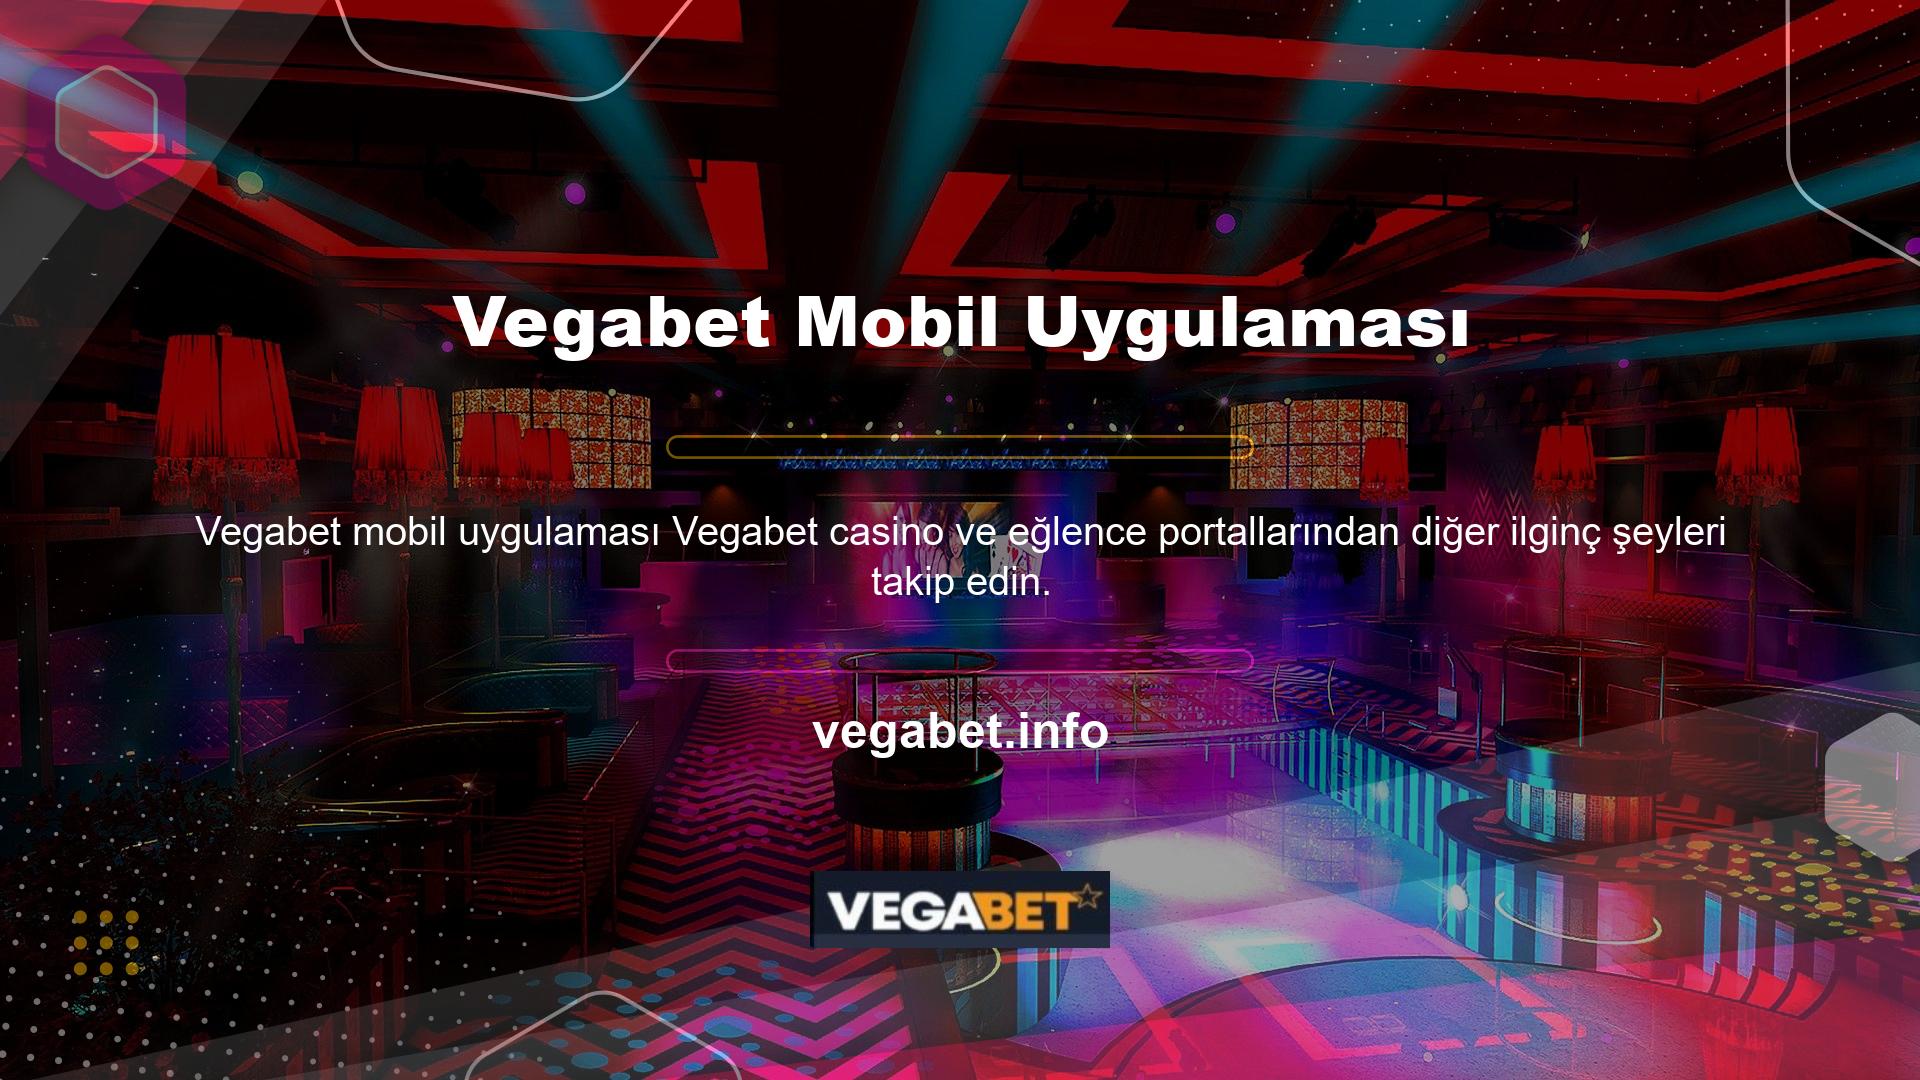 Akıllı telefonunuz her zaman yanınızda ve küçük bir program sayesinde Vegabet mobil uygulaması mobil internette bile çalışıyor